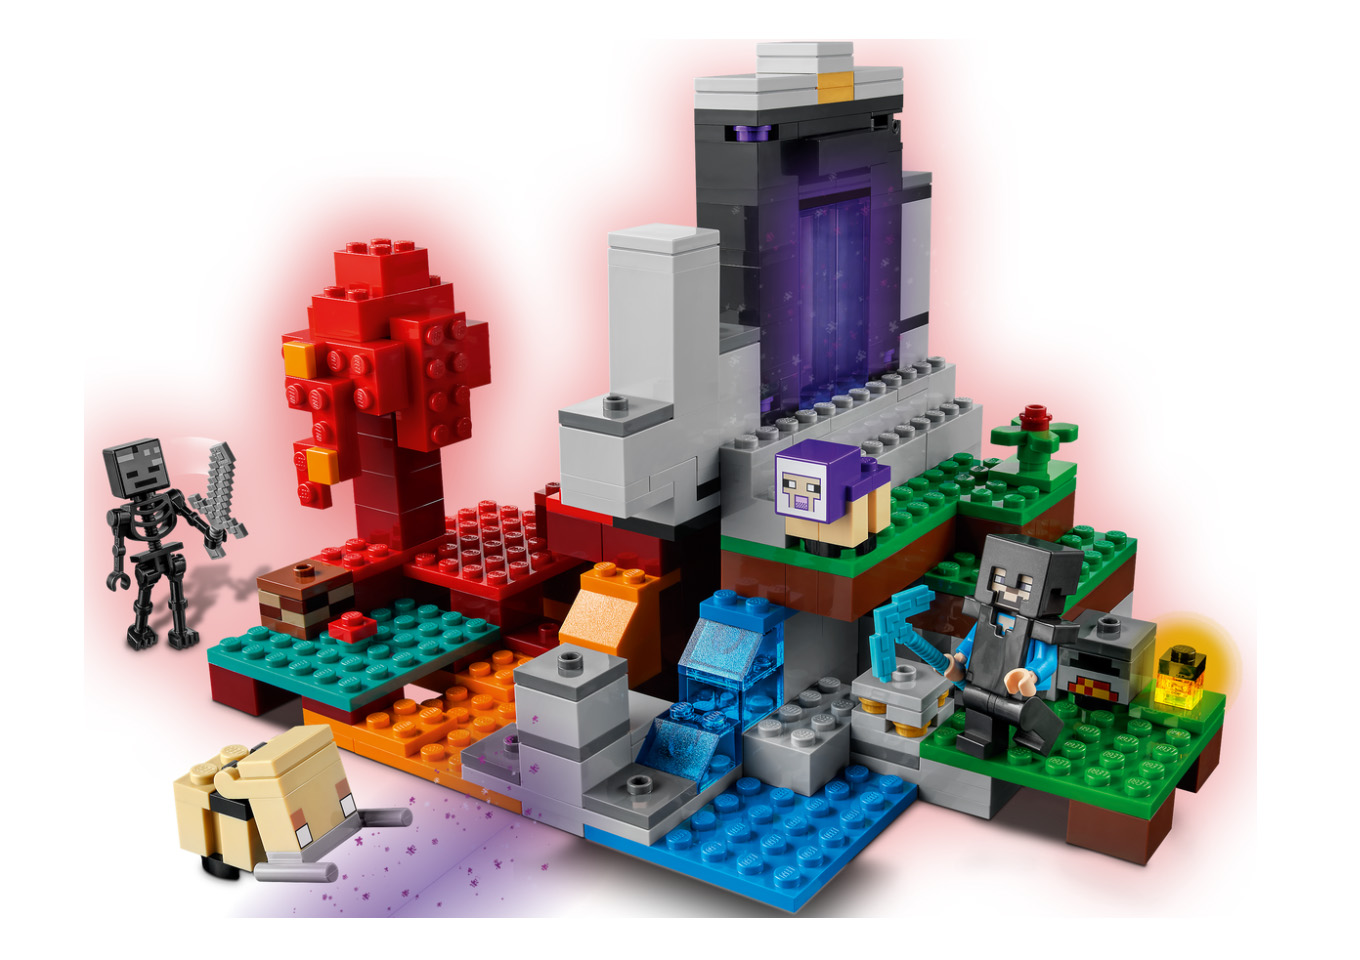 6月1日発売見込みレゴ マインクラフト新製品情報 21 スタッズ レゴ Lego 総合ニュースメディア